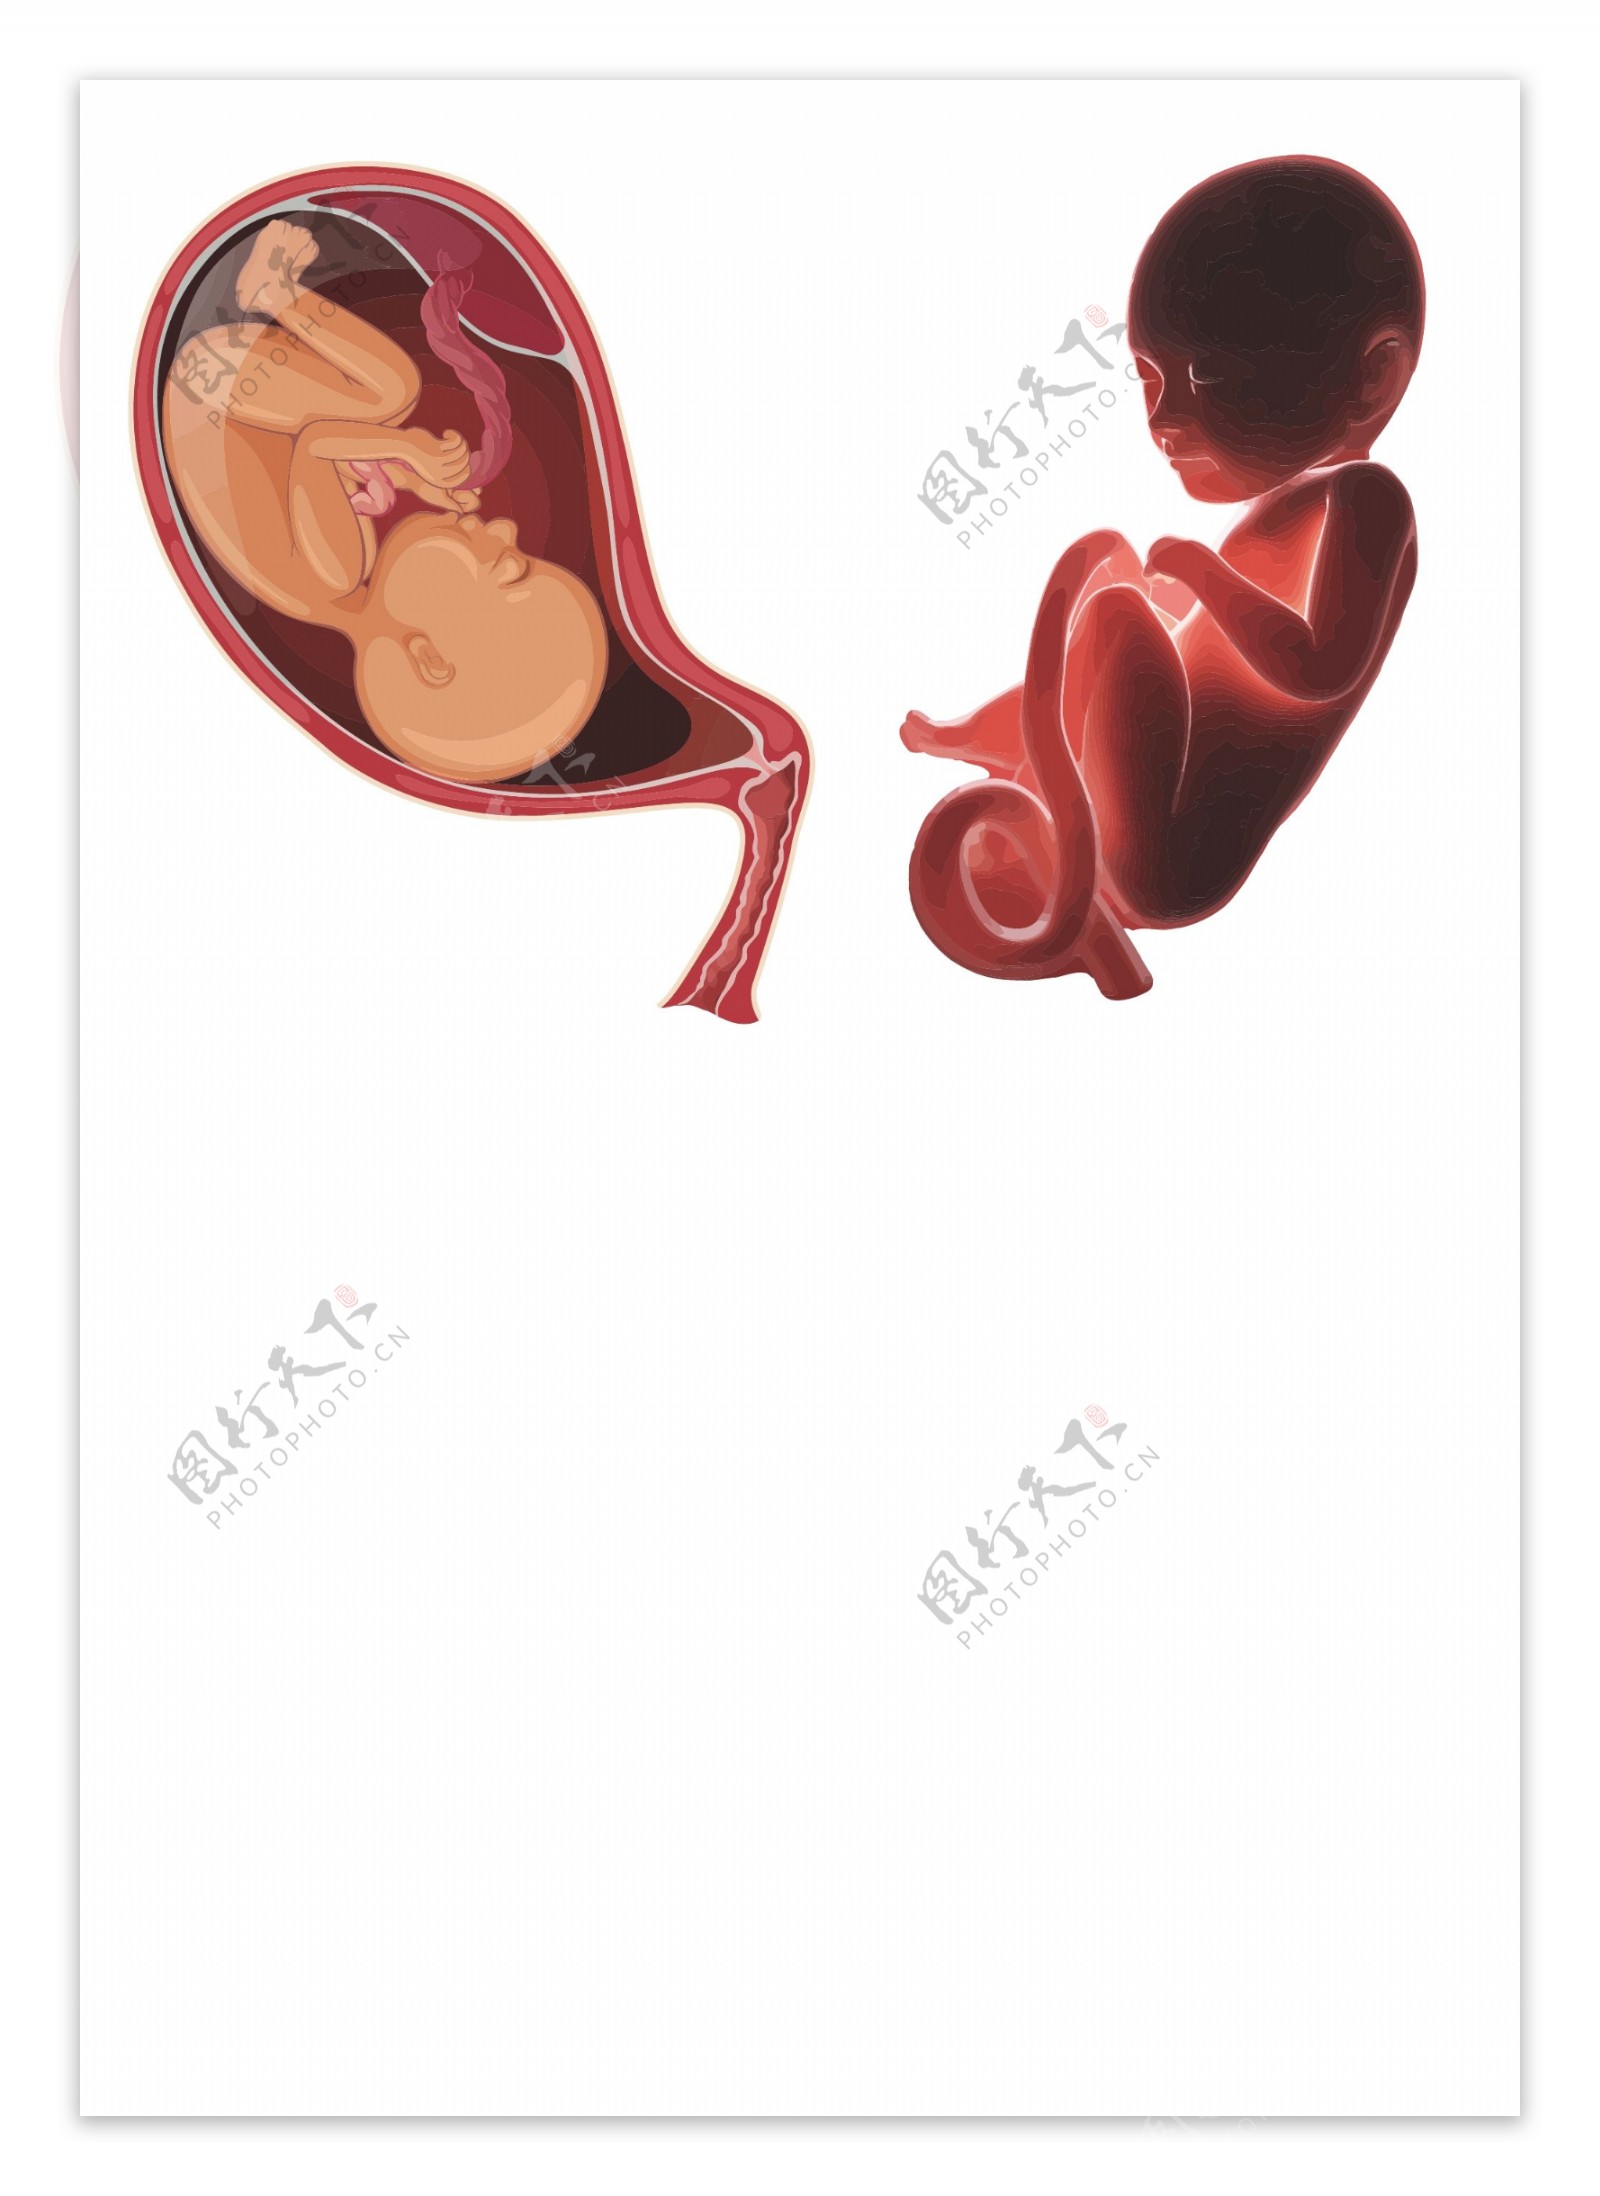 发育中的胚胎